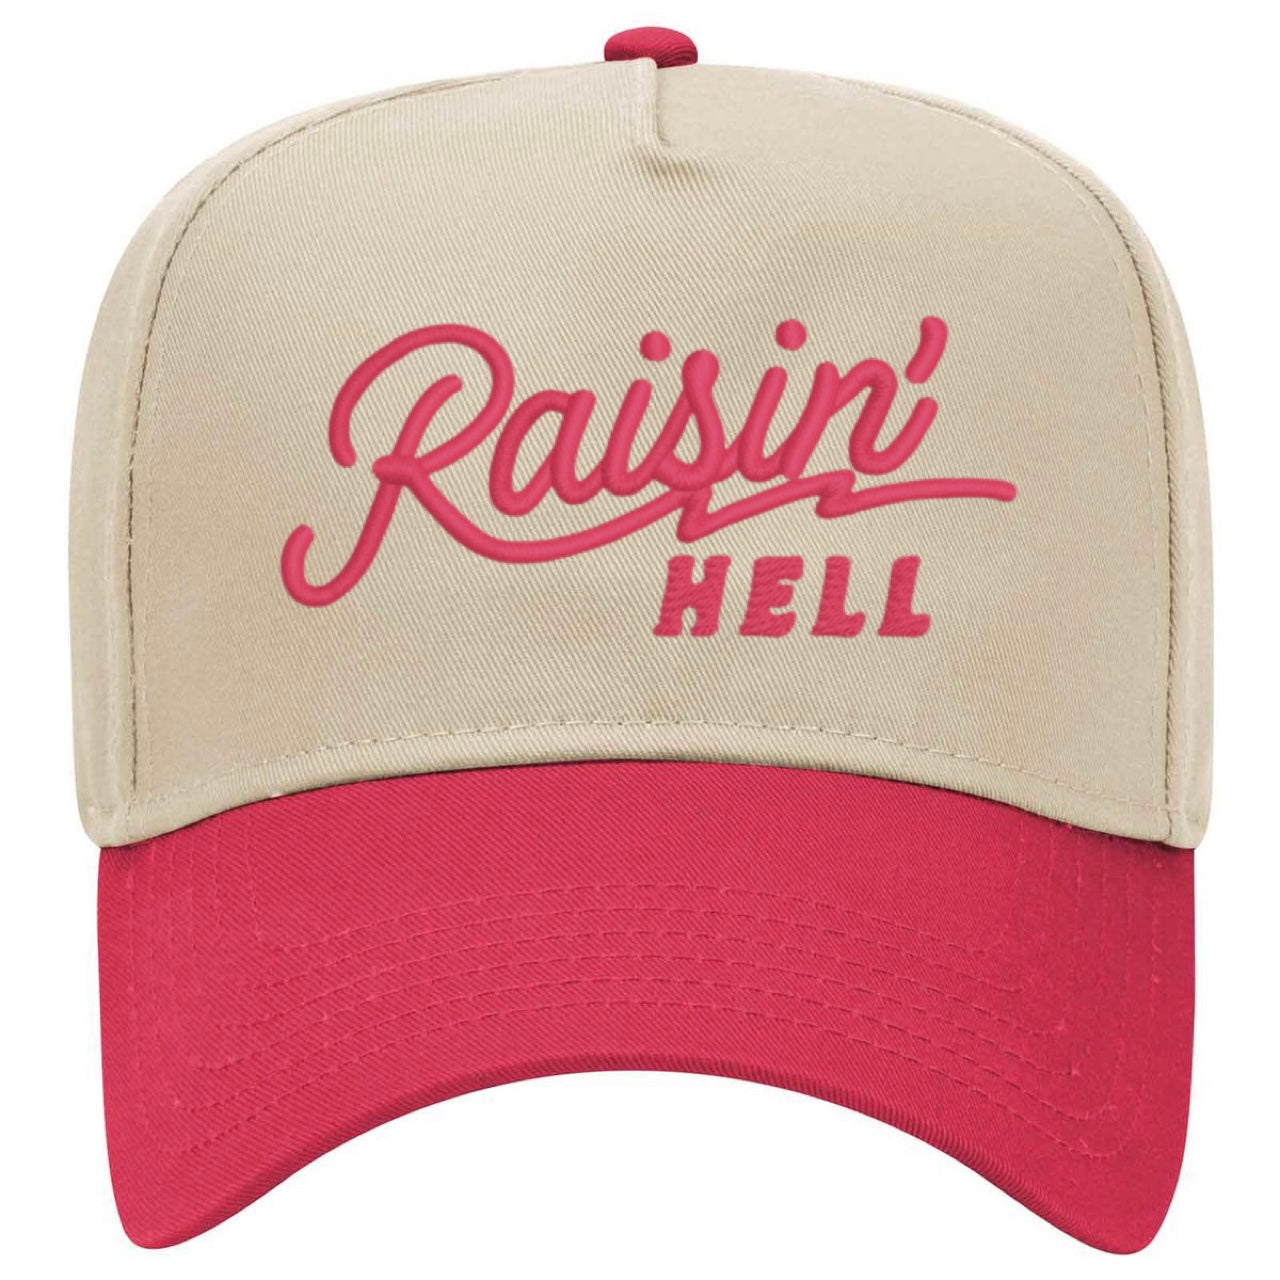 Raisin’ Hell Trucker Hat